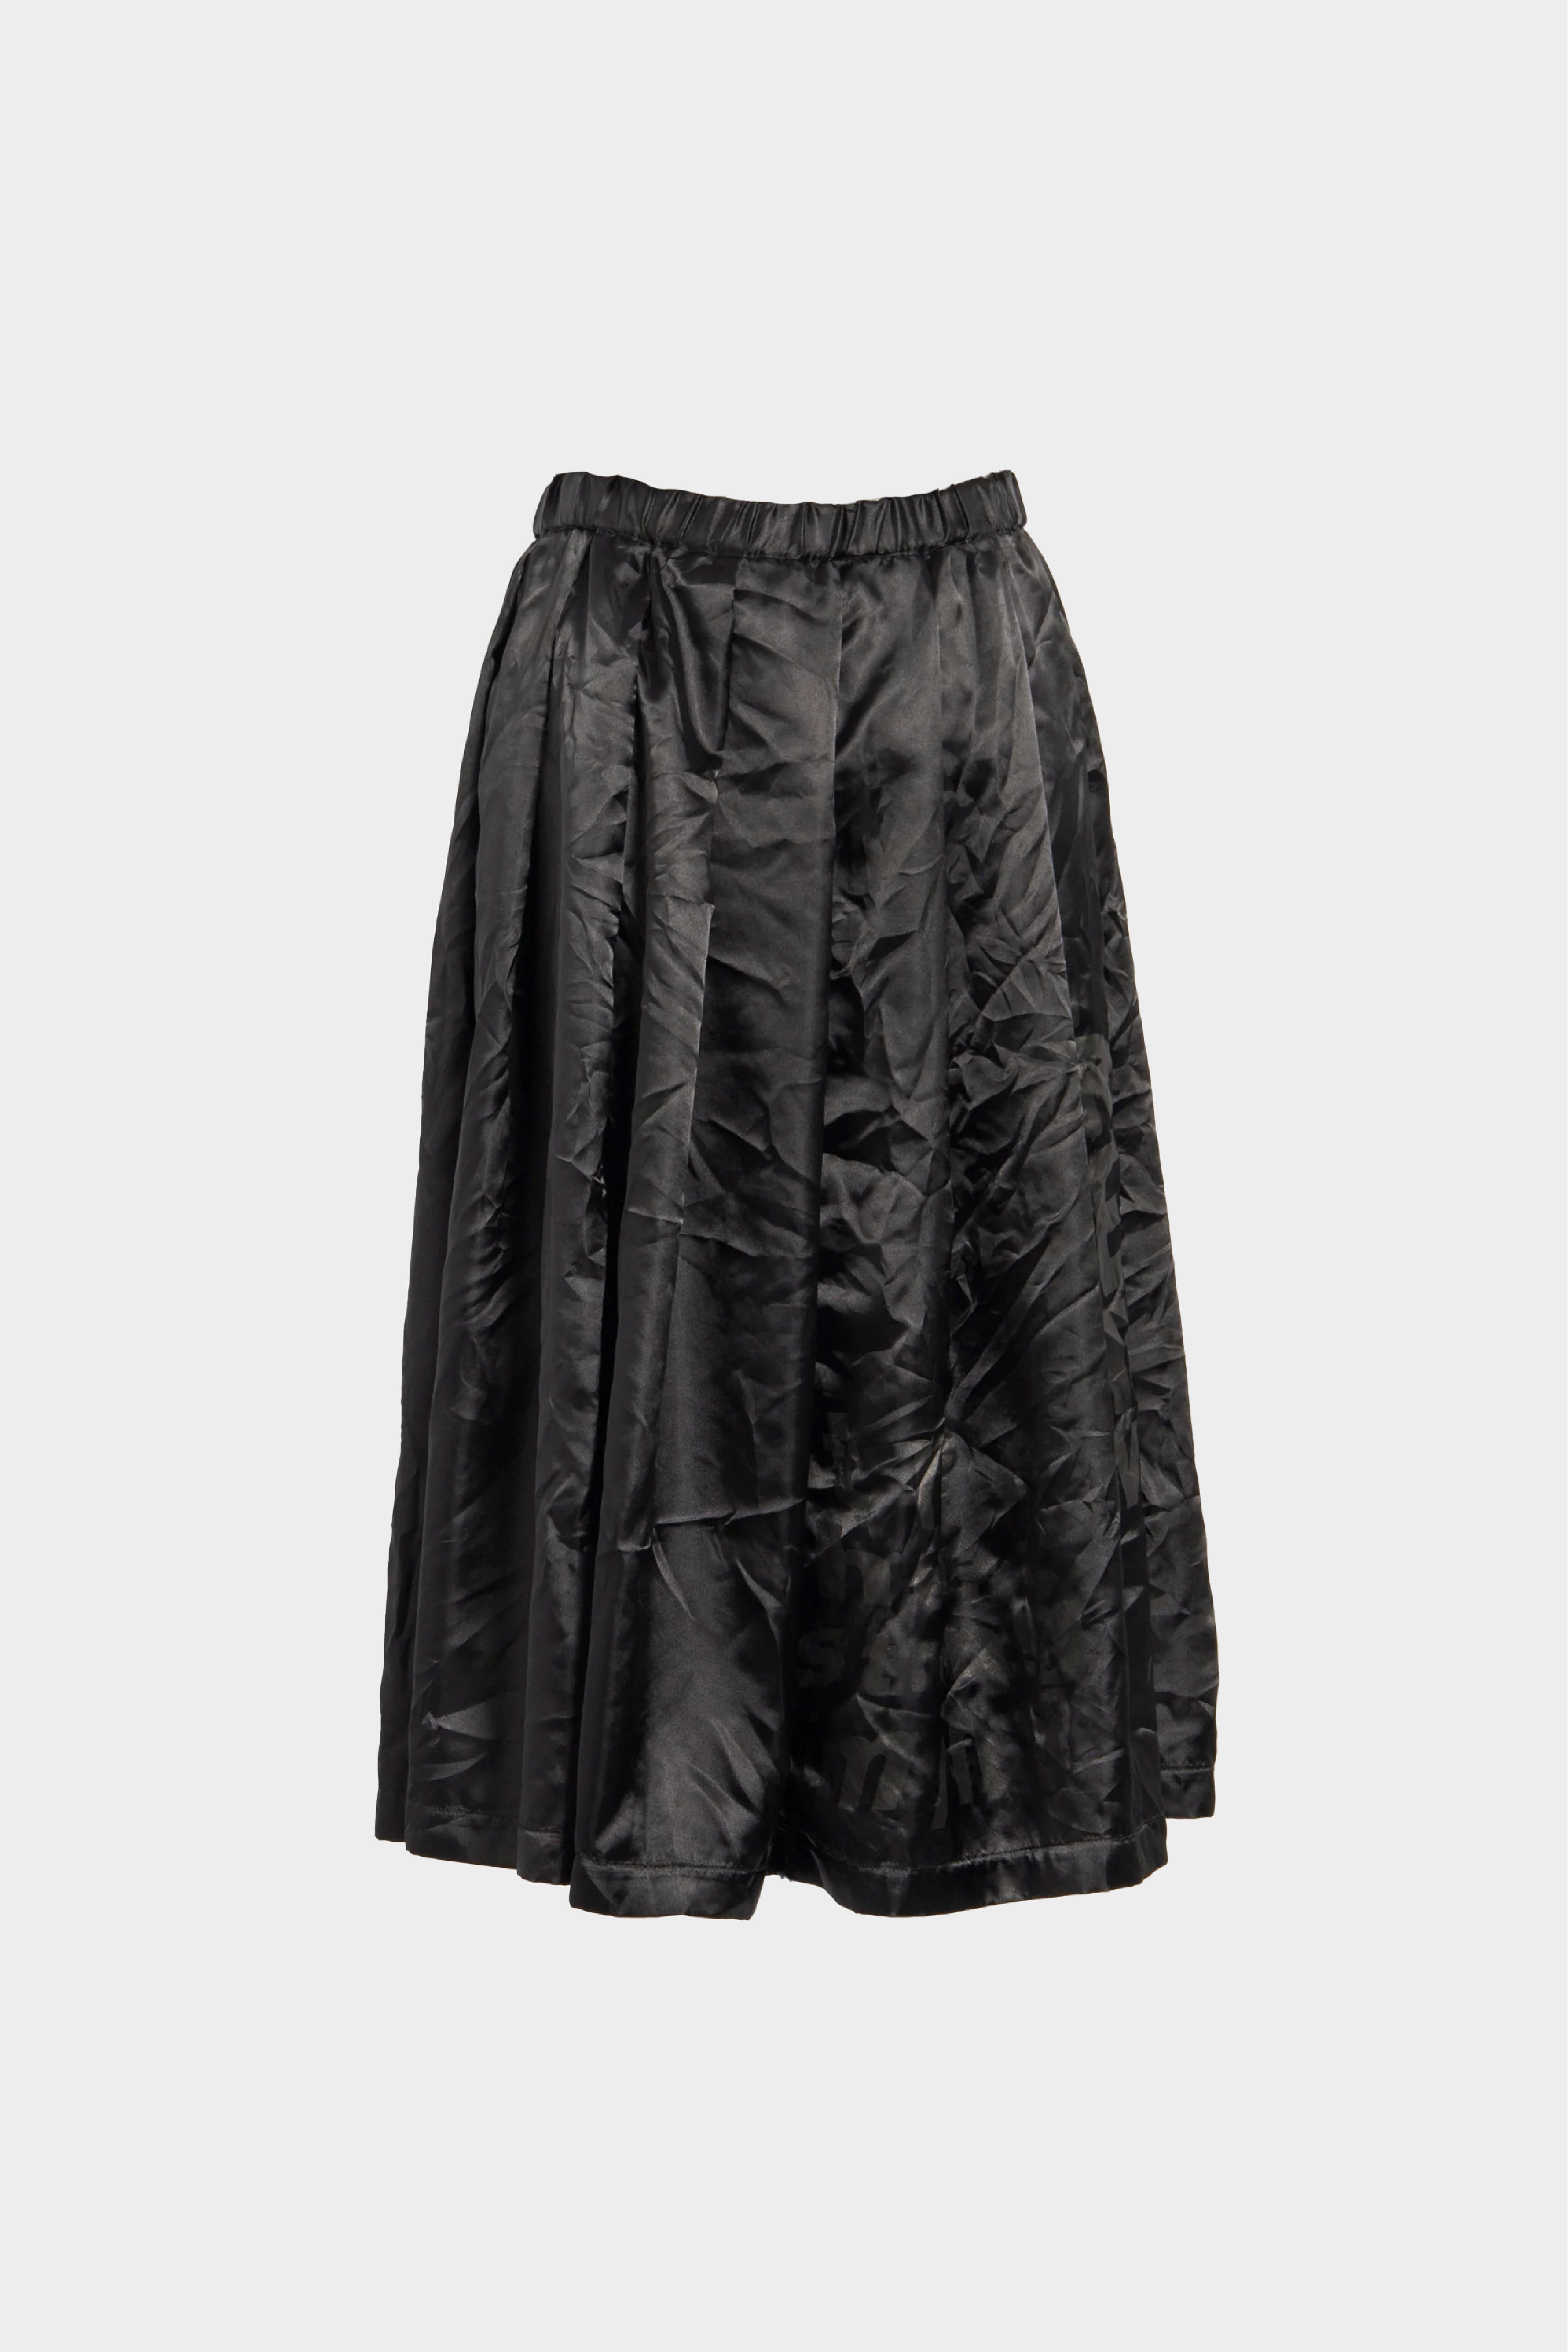 Selectshop FRAME - COMME DES GARÇONS BLACK Skirt Bottoms Concept Store Dubai